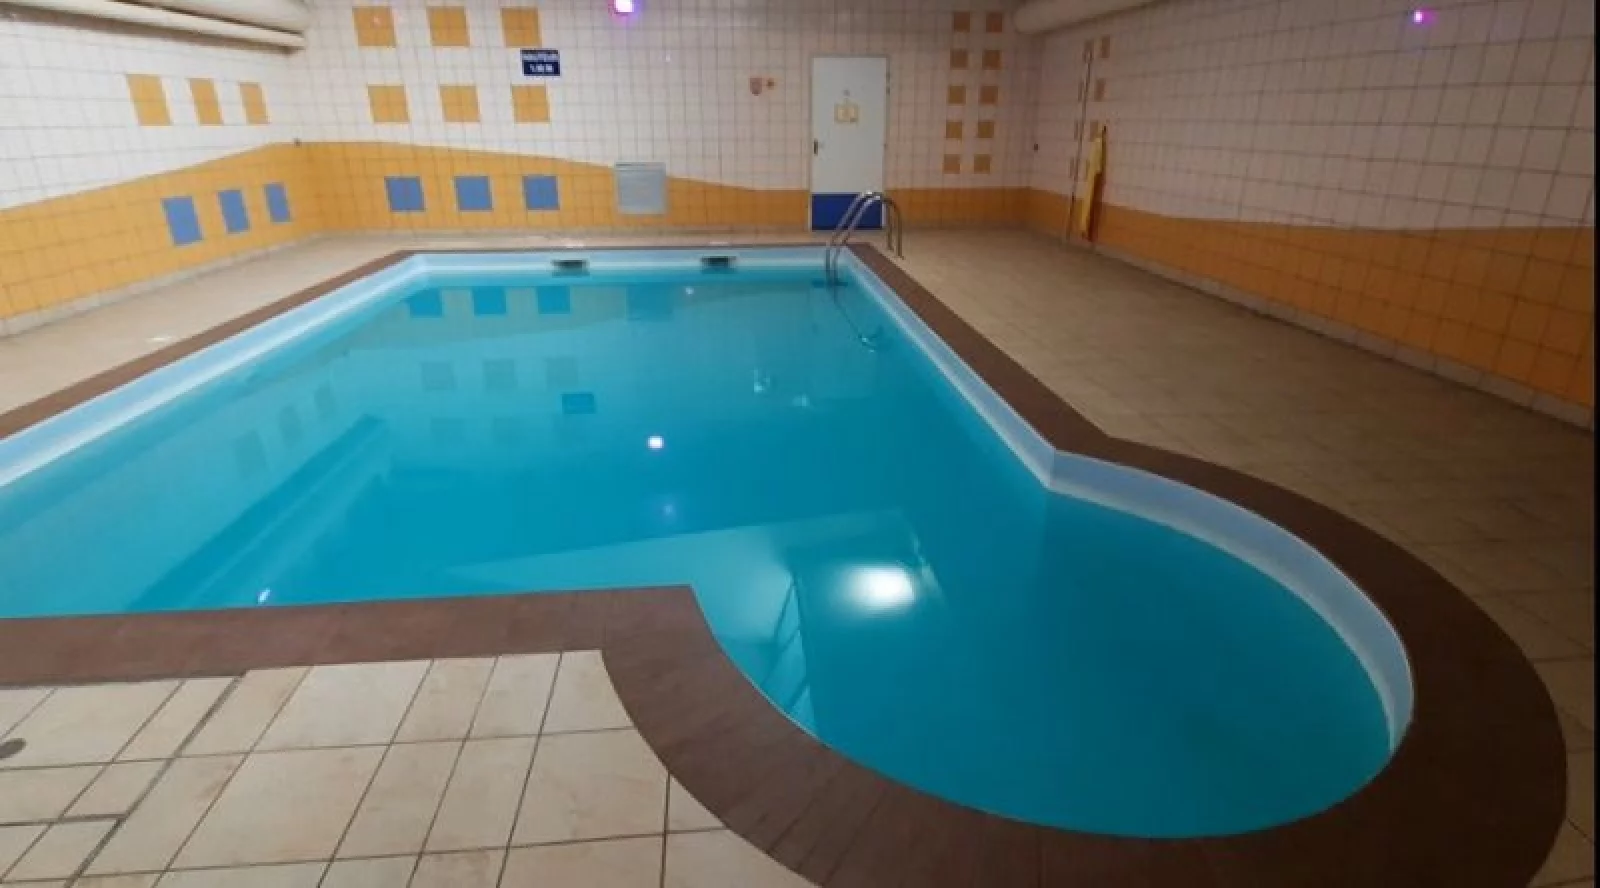 Location studio meublé 19m² avec piscine (Poitiers)